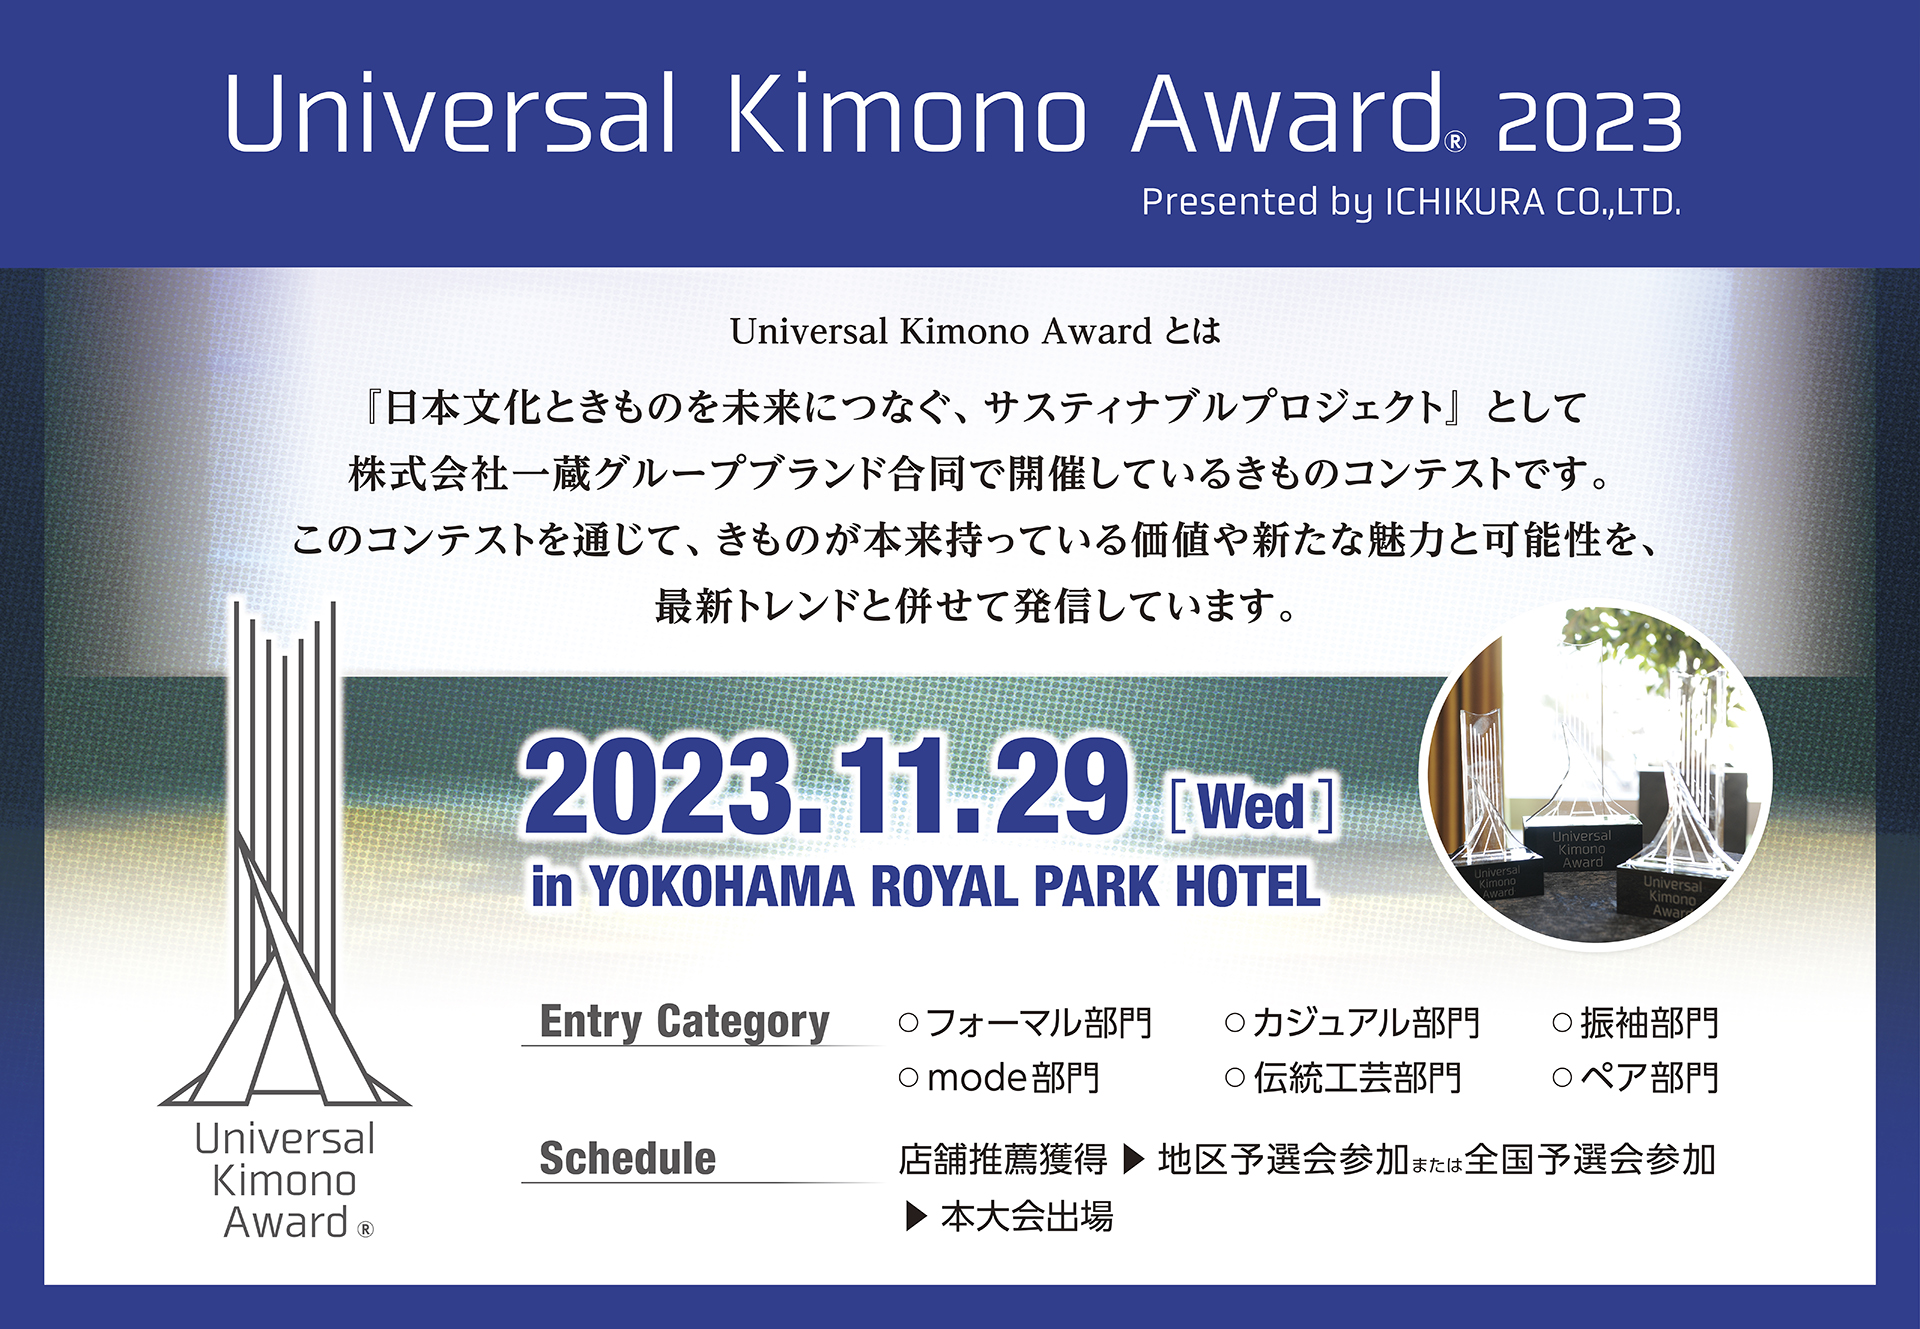 【和装事業】きものコンテスト「Universal Kimono Award 2023」今年も開催決定！各地区で予選会スタートしています‼